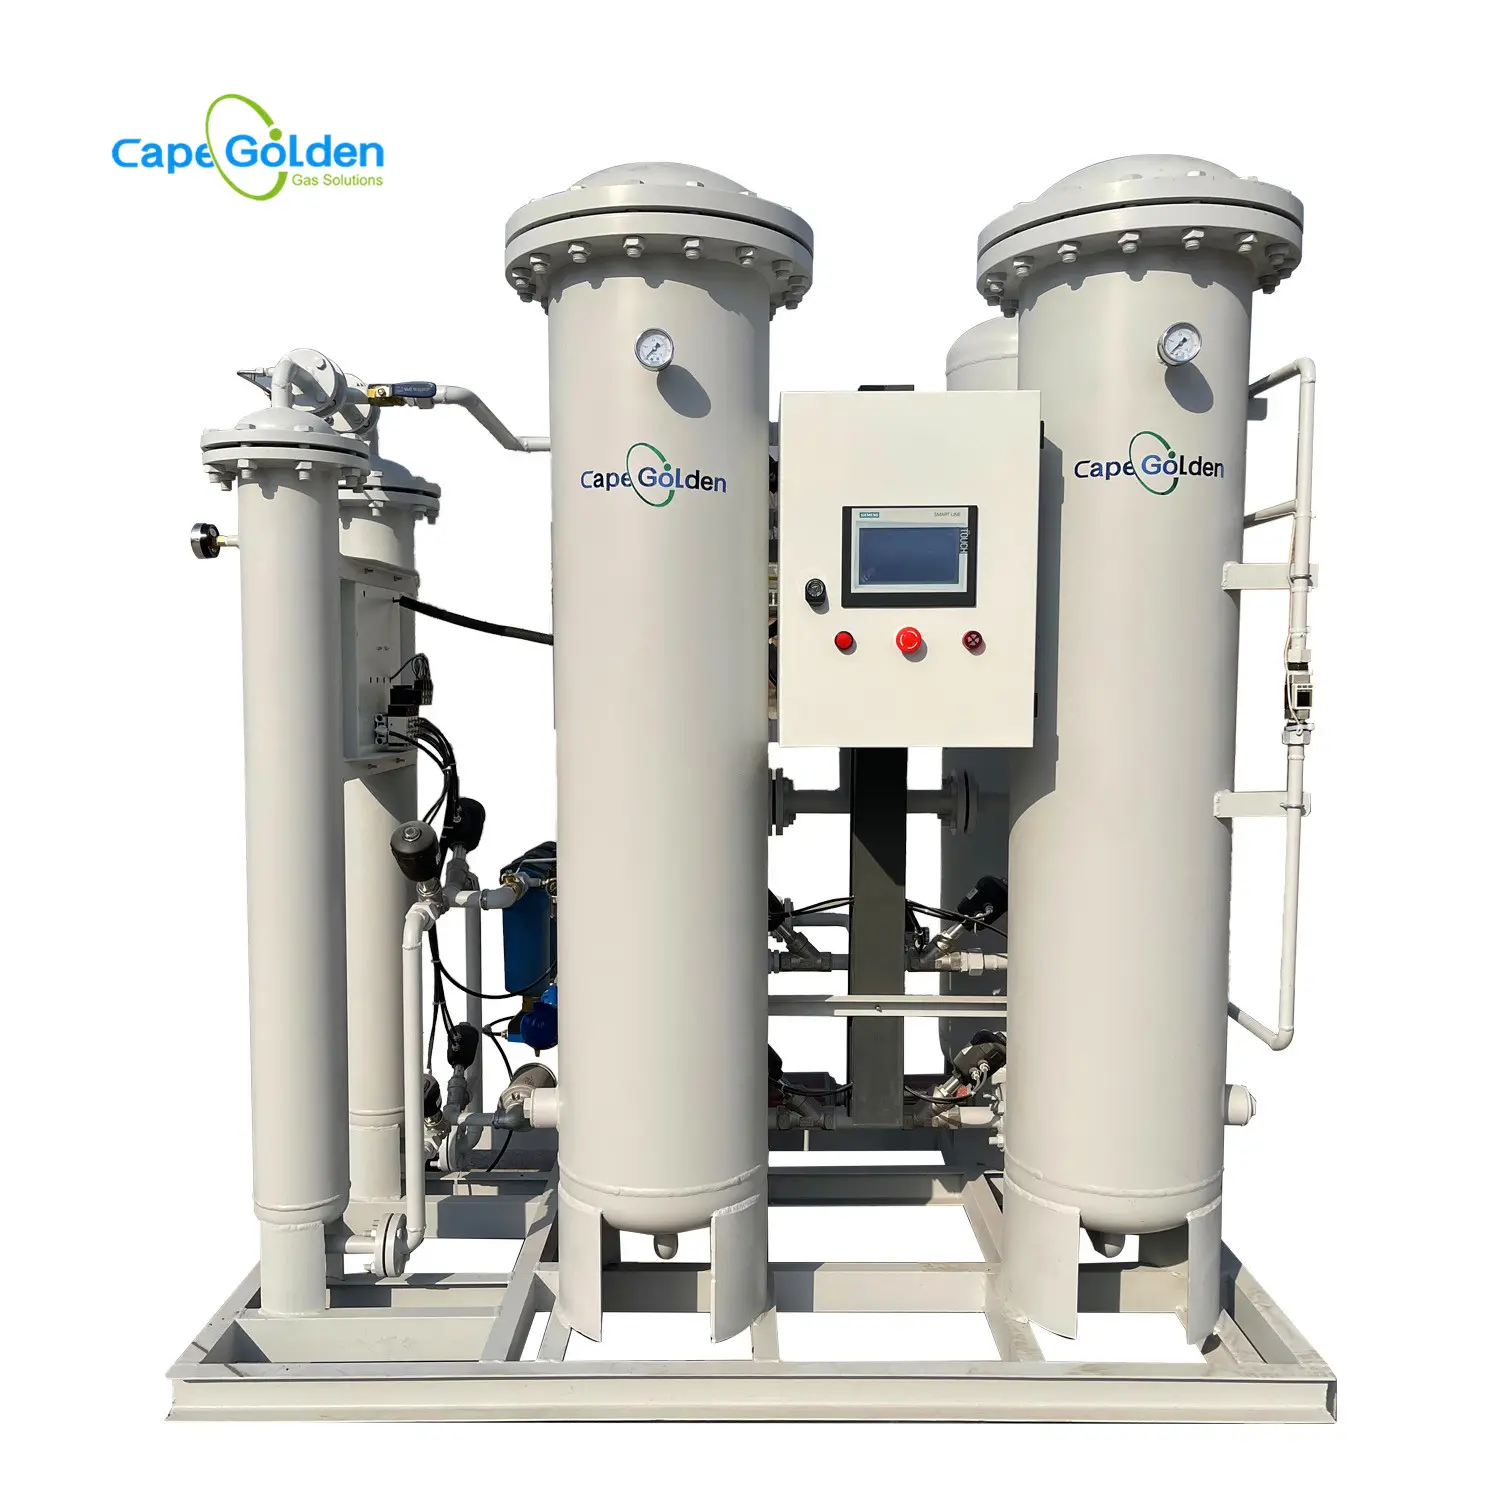 Impianto di ossigeno 99% purezza 20 m3 generatore di ossigeno di alta qualità personalizzato fornito concentratore di ossigeno portatile pechino cina 100%